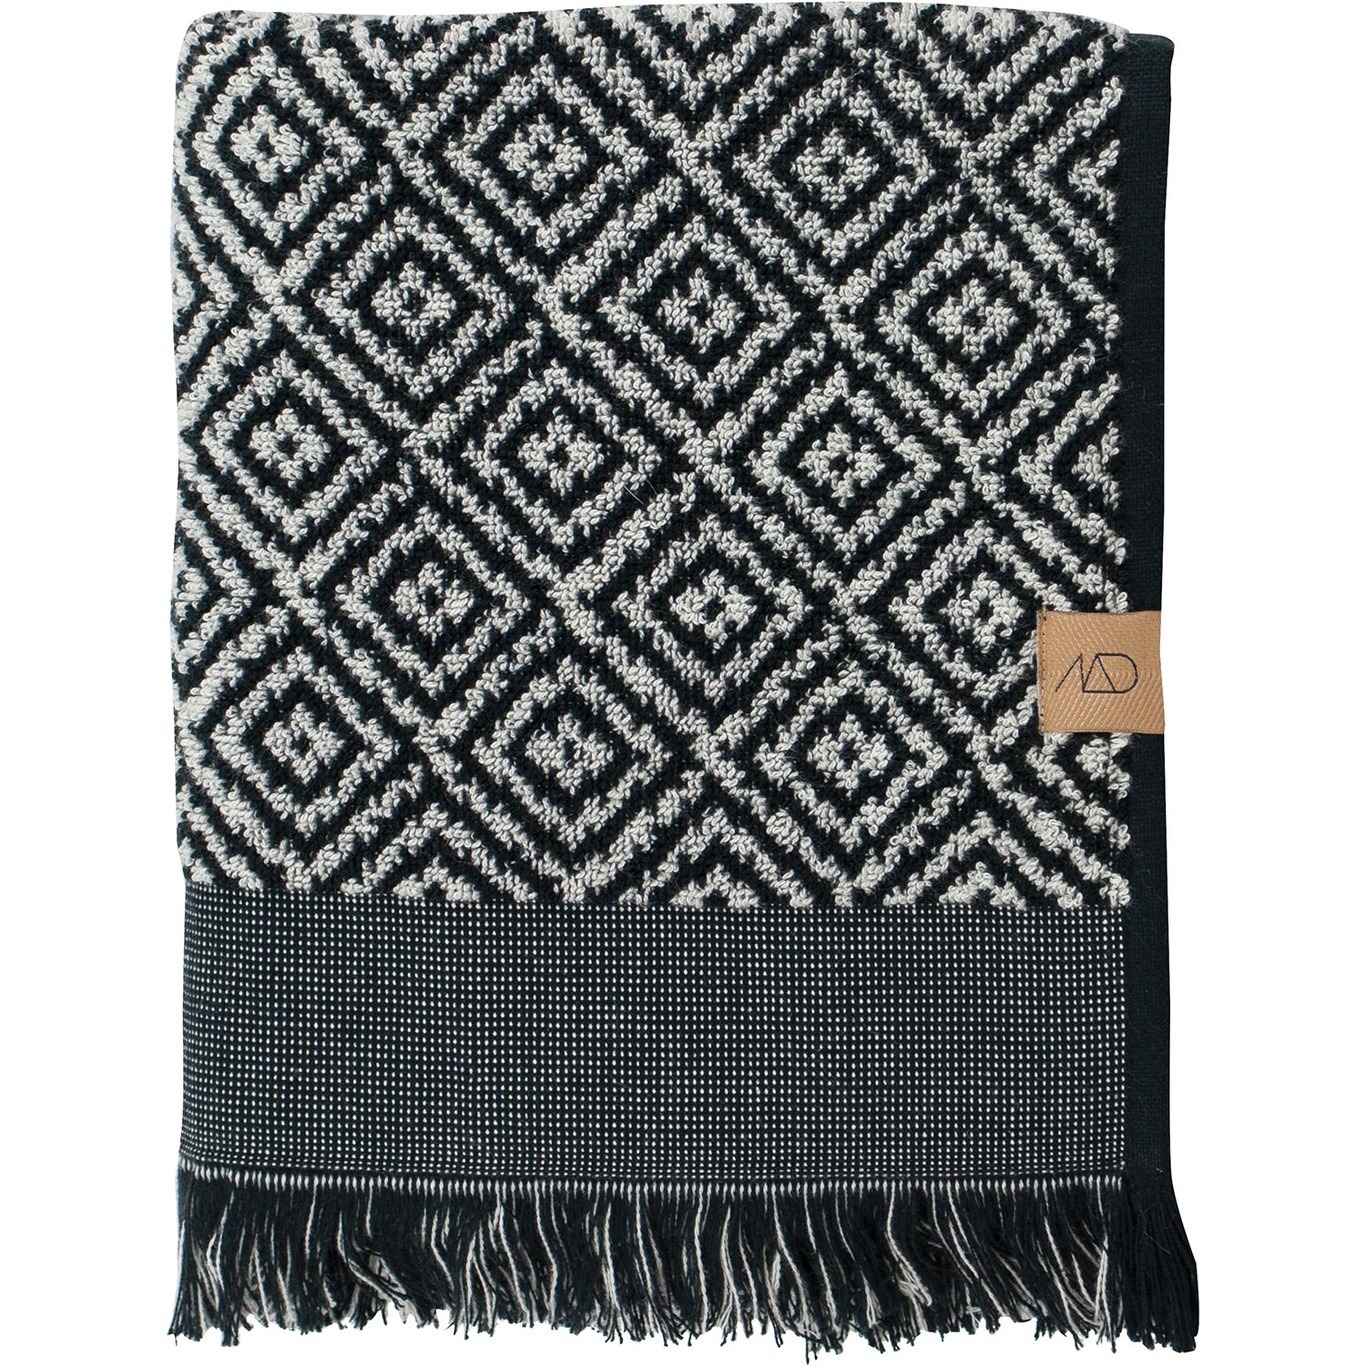 Morocco Handdoek 2-Pack, 35 x 55 cm, Zwart/Wit